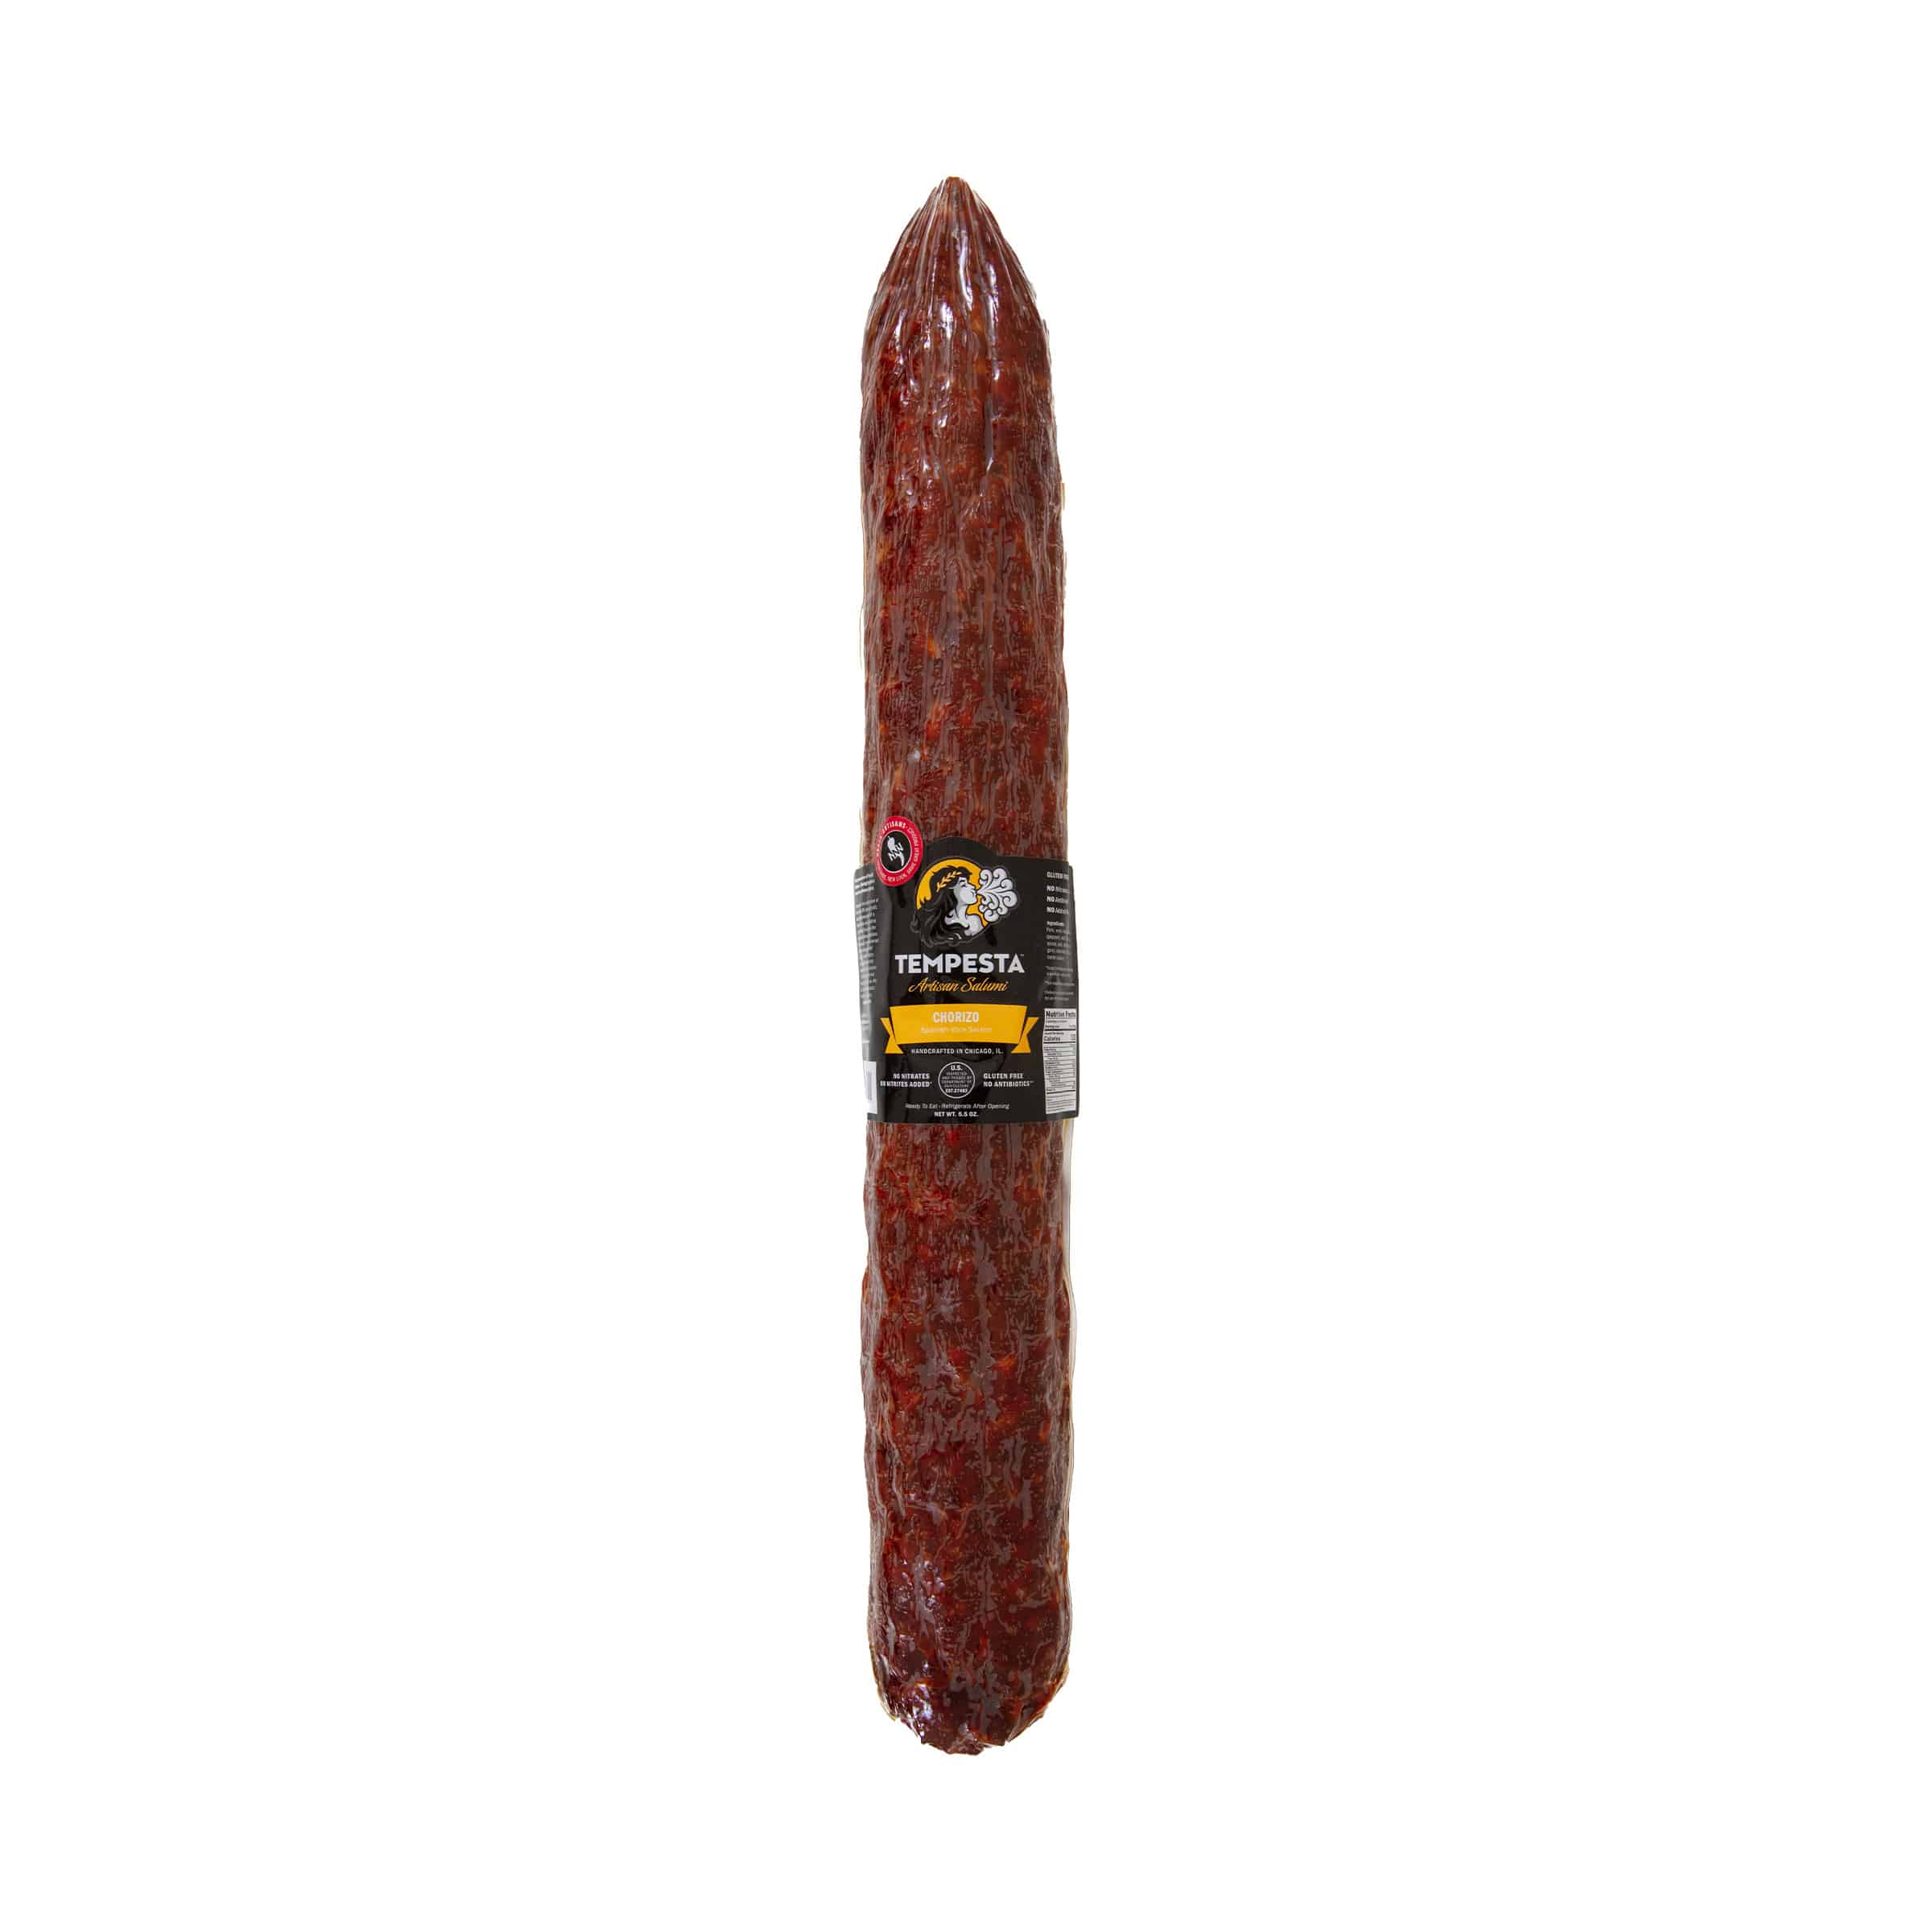 Chorizo (Spanish Style Salami) - Large Format